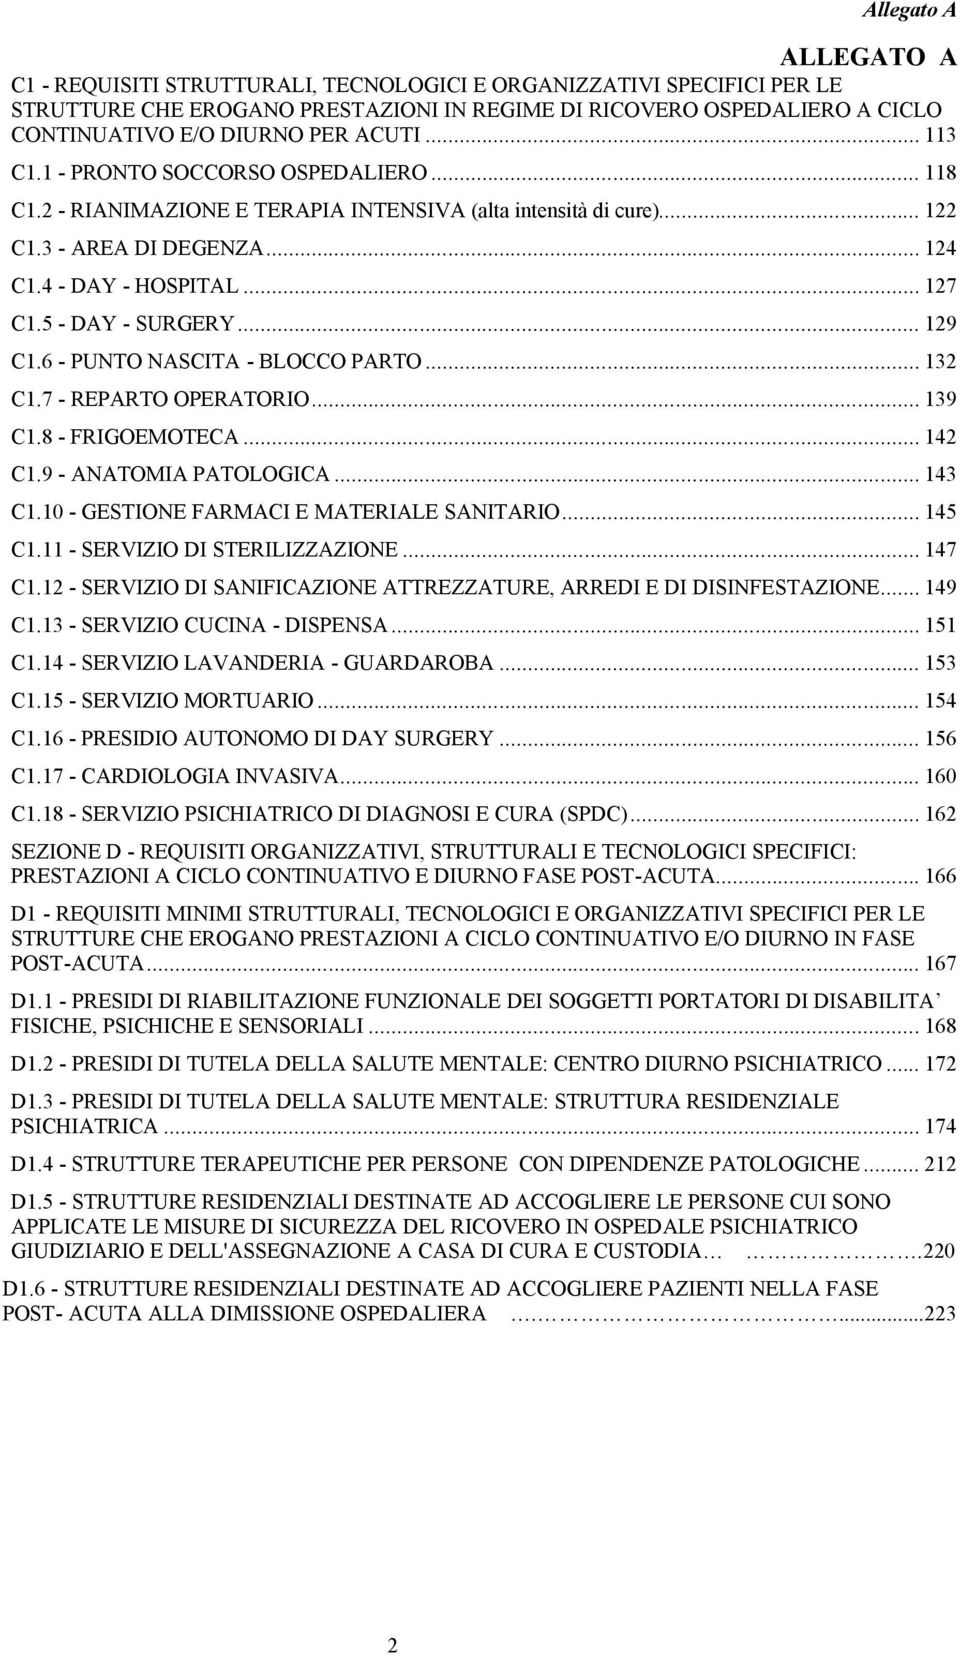 6 - PUNTO NASCITA - BLOCCO PARTO... 132 C1.7 - REPARTO OPERATORIO... 139 C1.8 - FRIGOEMOTECA... 142 C1.9 - ANATOMIA PATOLOGICA... 143 C1.10 - GESTIONE FARMACI E MATERIALE SANITARIO... 145 C1.